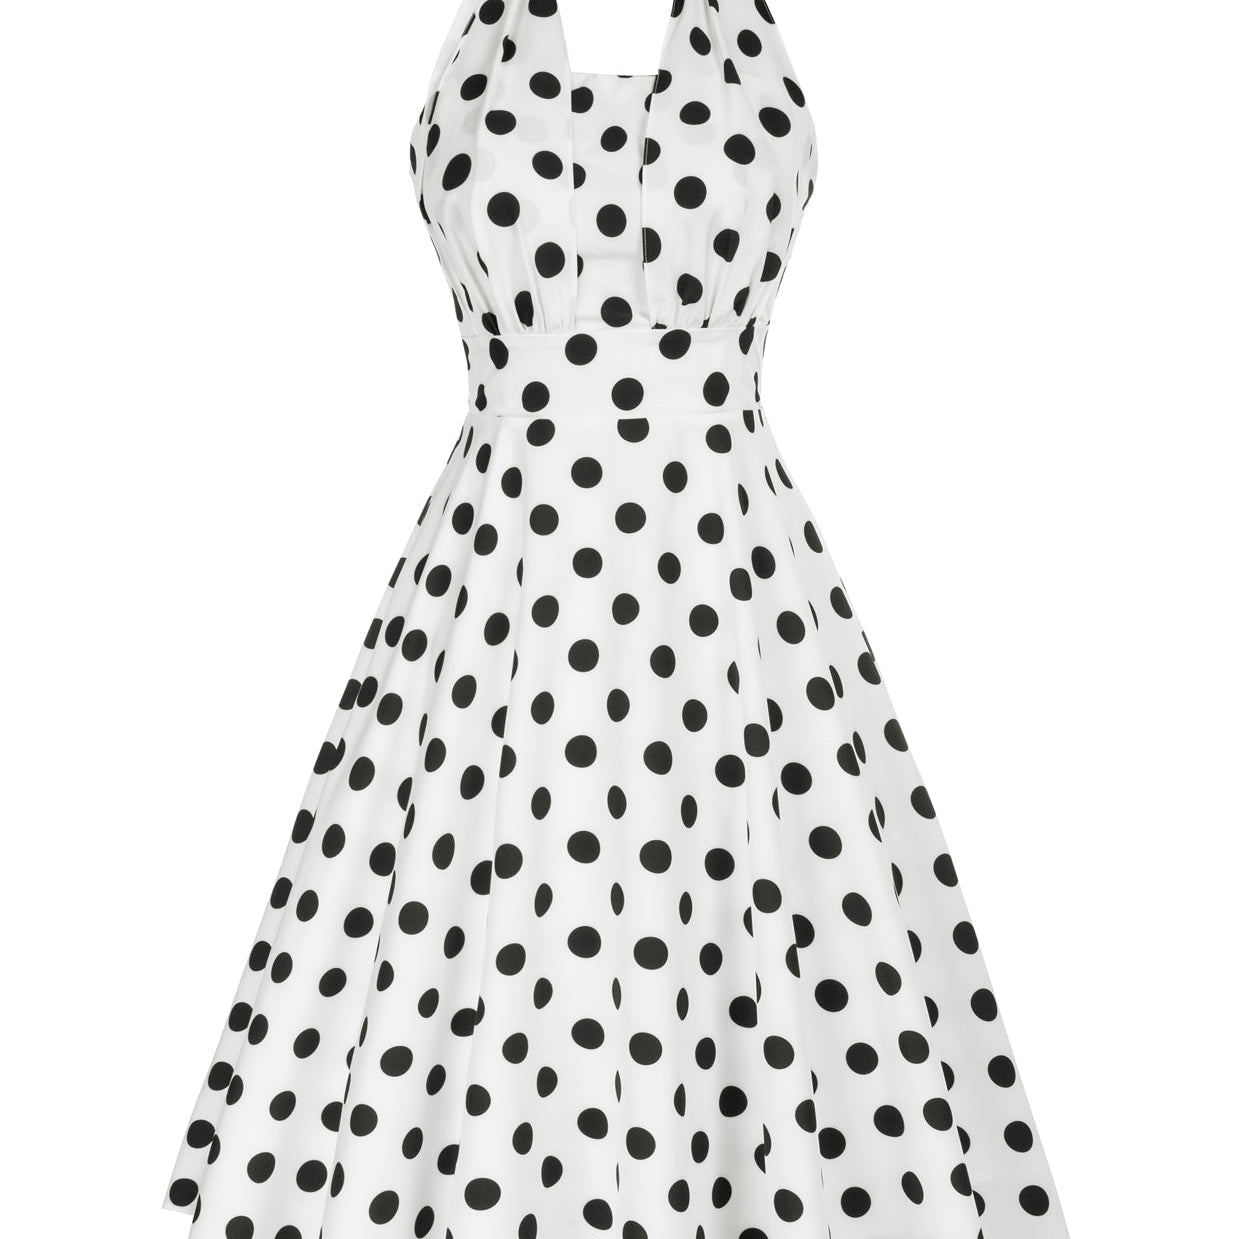 Vintage Polka Dots Halter Dress Backless Defined Waist Above Knee A-Line Dress